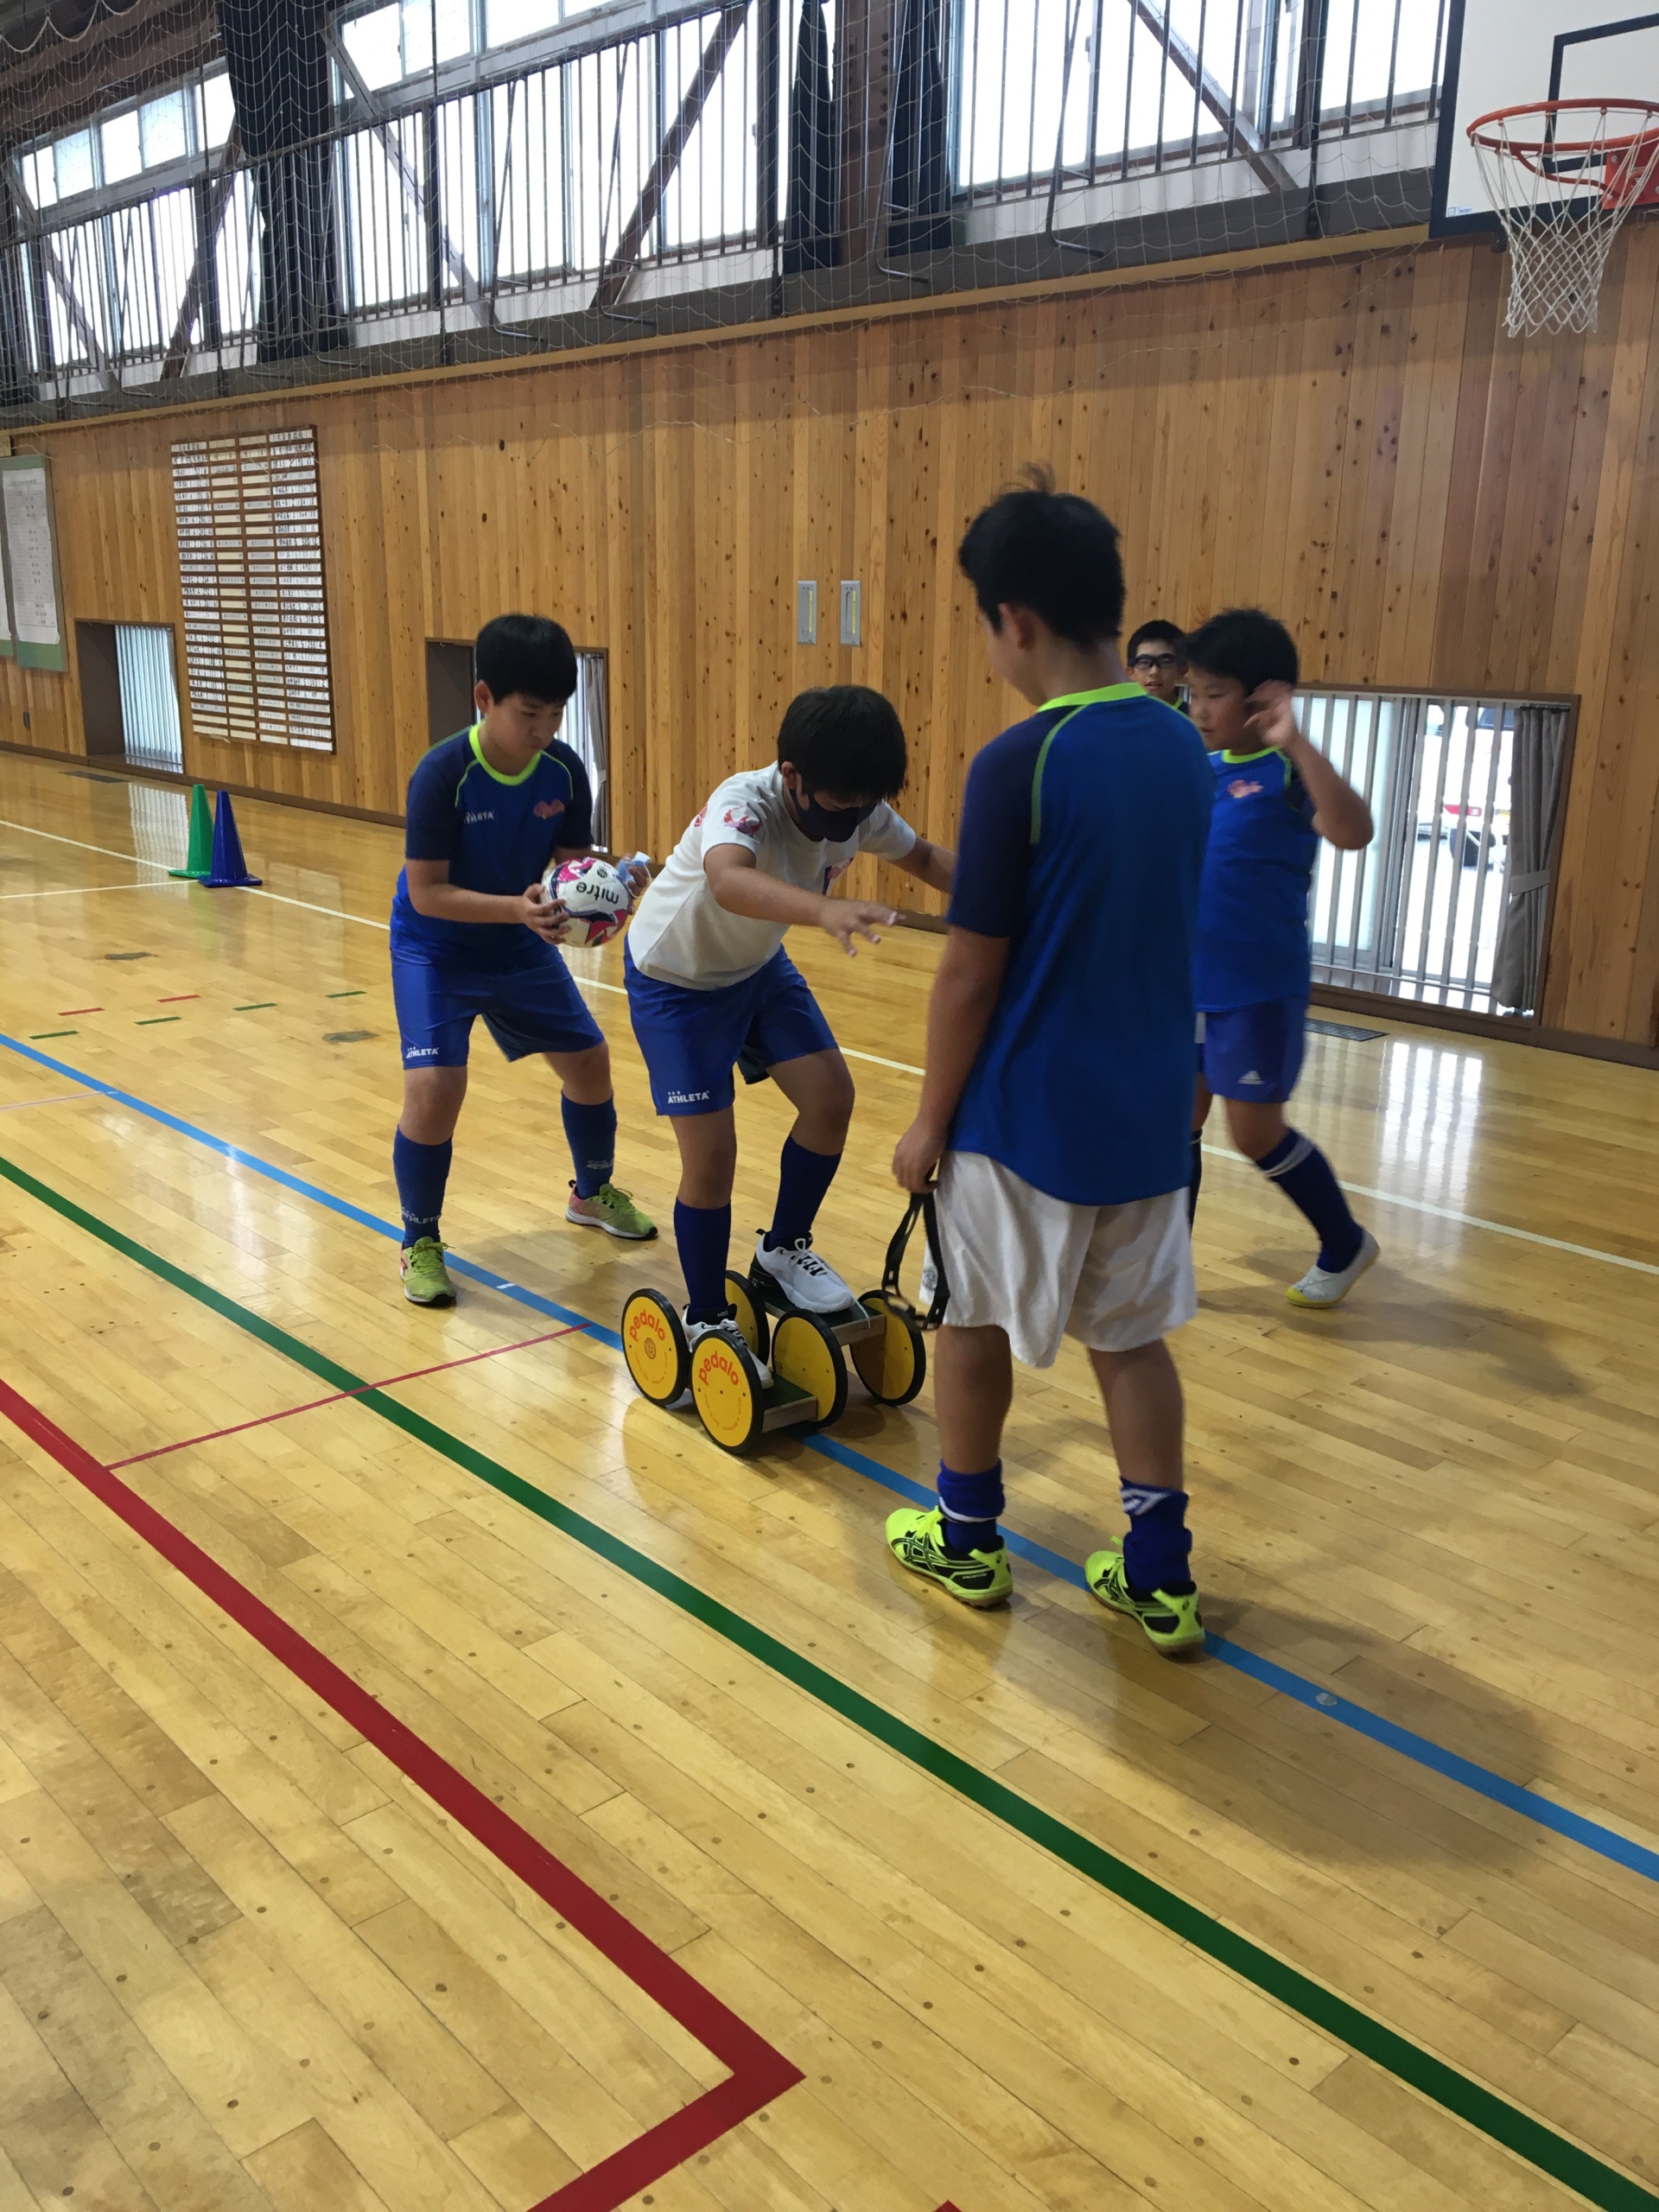 日本代表サッカー選手 宇佐美貴史さん自宅で愛用中トレーニング器具 いつでも遊びがモノをいう ポーラスター